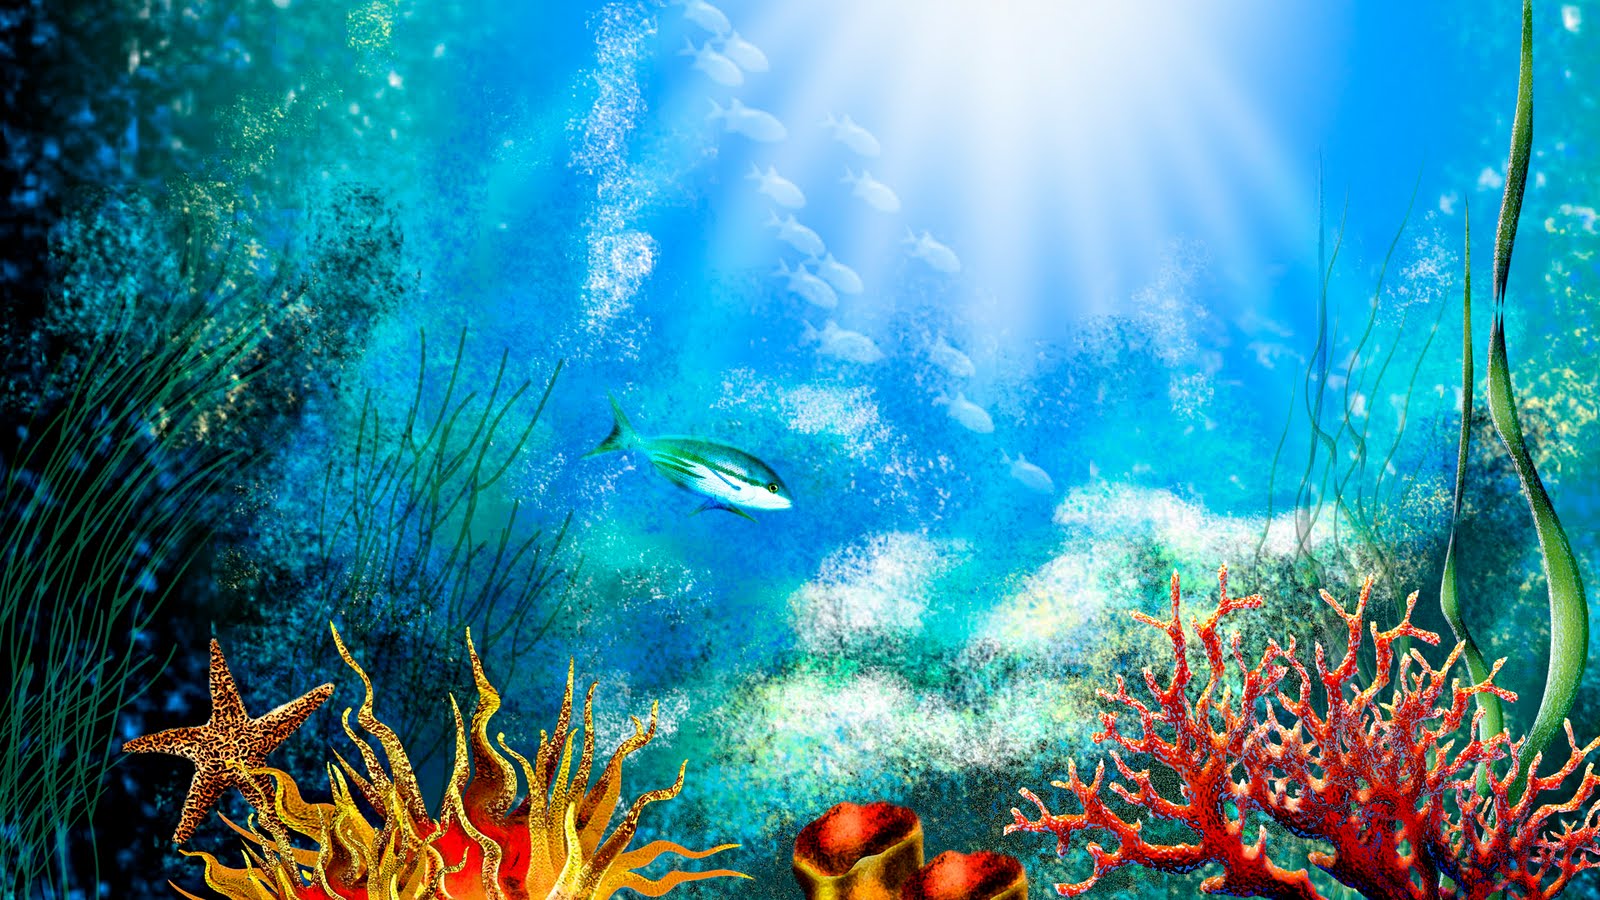 水族館壁紙hd,水中,海洋生物学,サンゴ礁,サンゴ礁の魚,リーフ